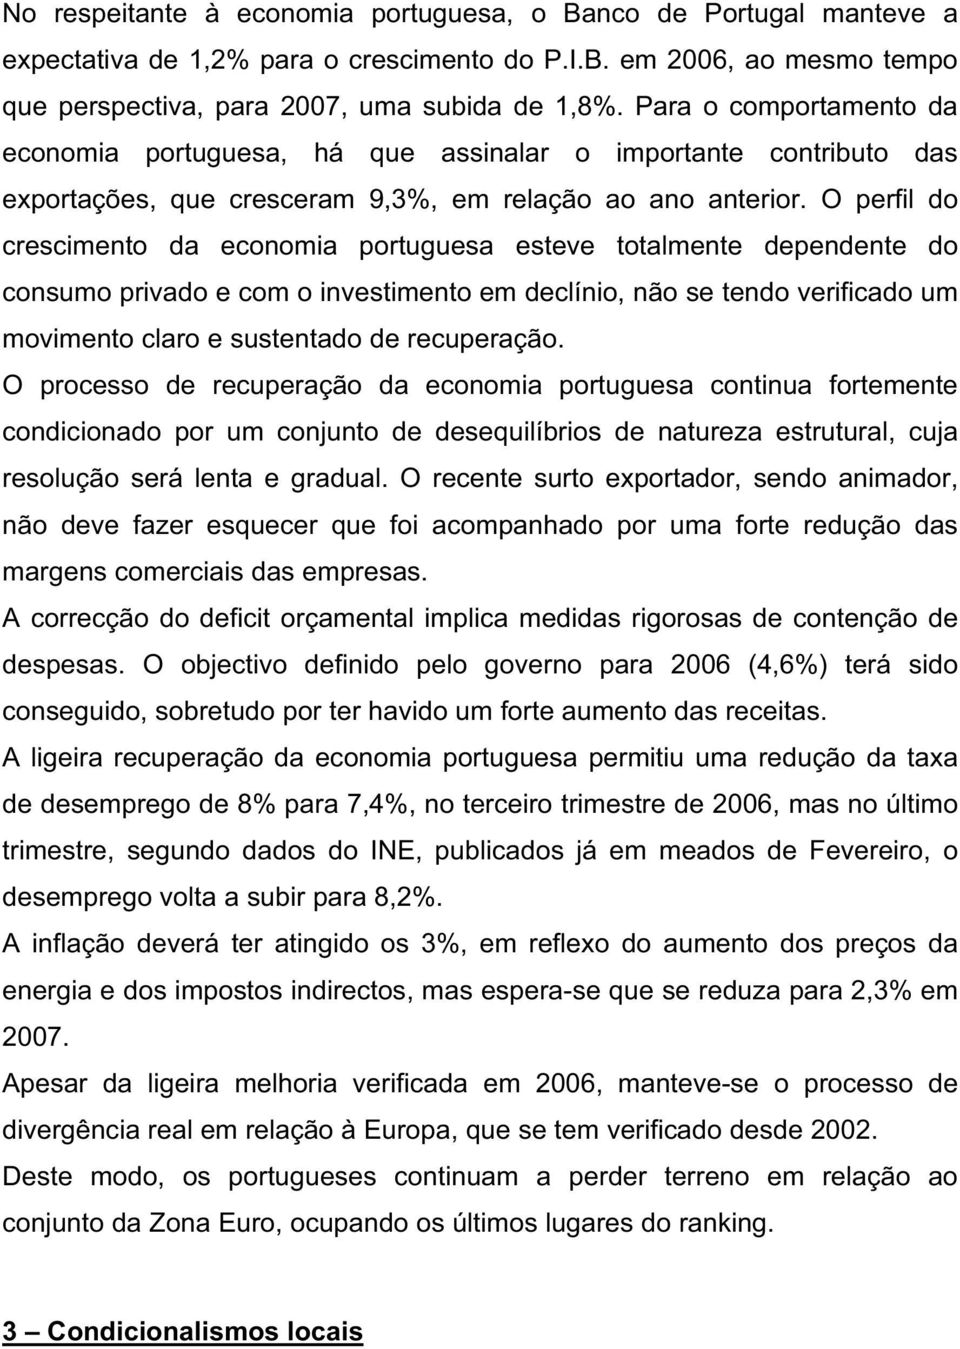 O perfil do crescimento da economia portuguesa esteve totalmente dependente do consumo privado e com o investimento em declínio, não se tendo verificado um movimento claro e sustentado de recuperação.